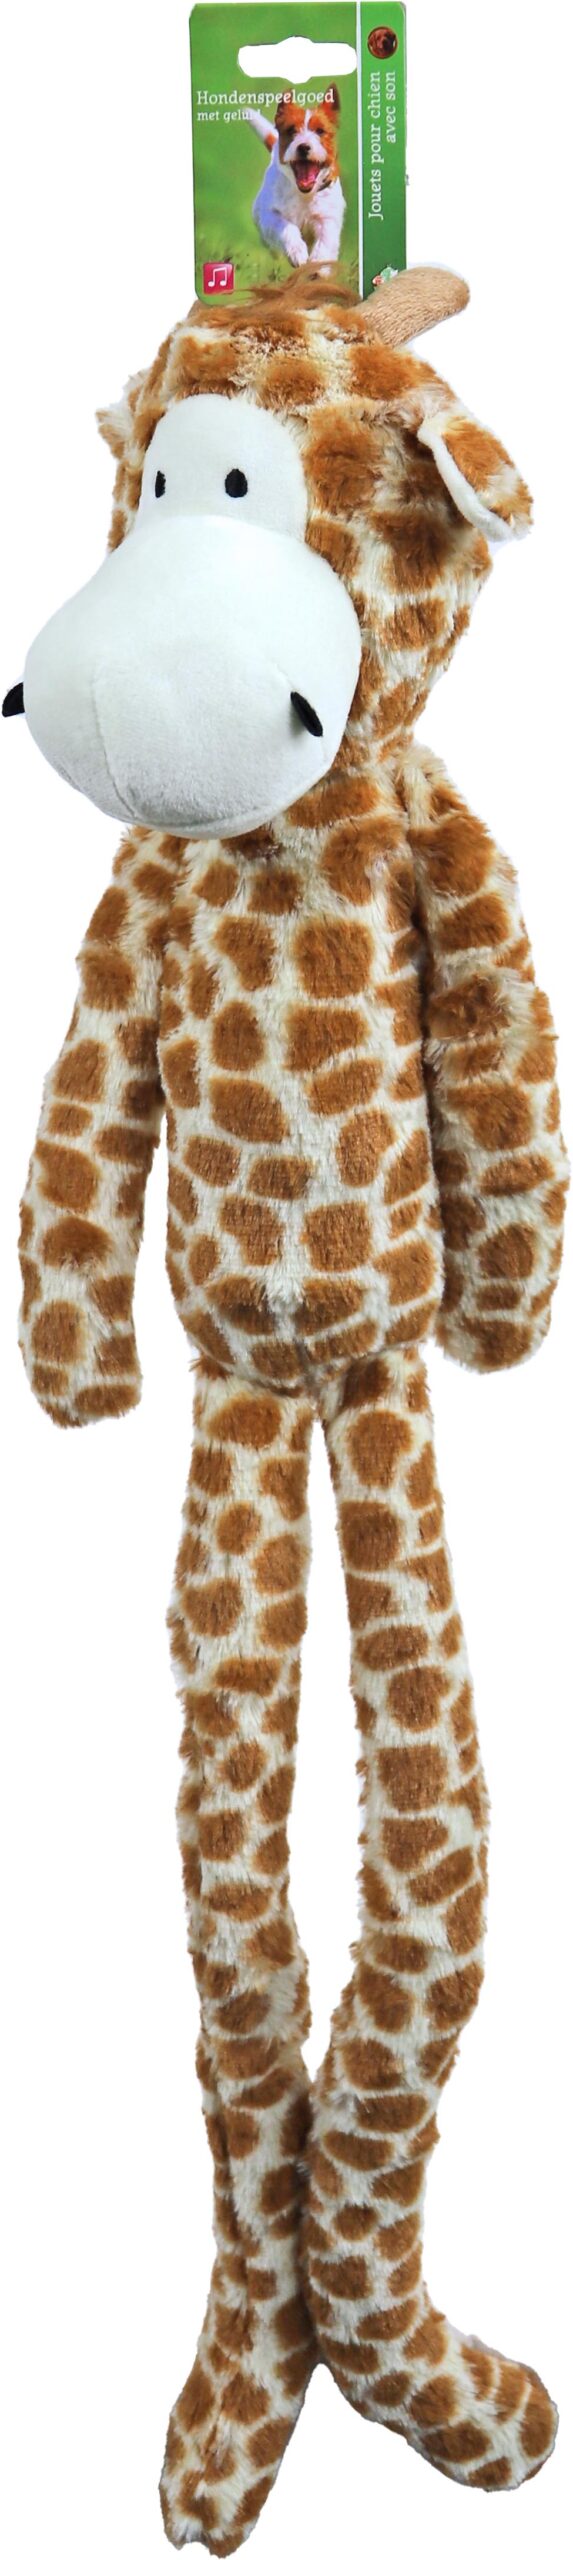 Boon Hondenspeelgoed XXL Giraffe Pluche Met Piep 75cm